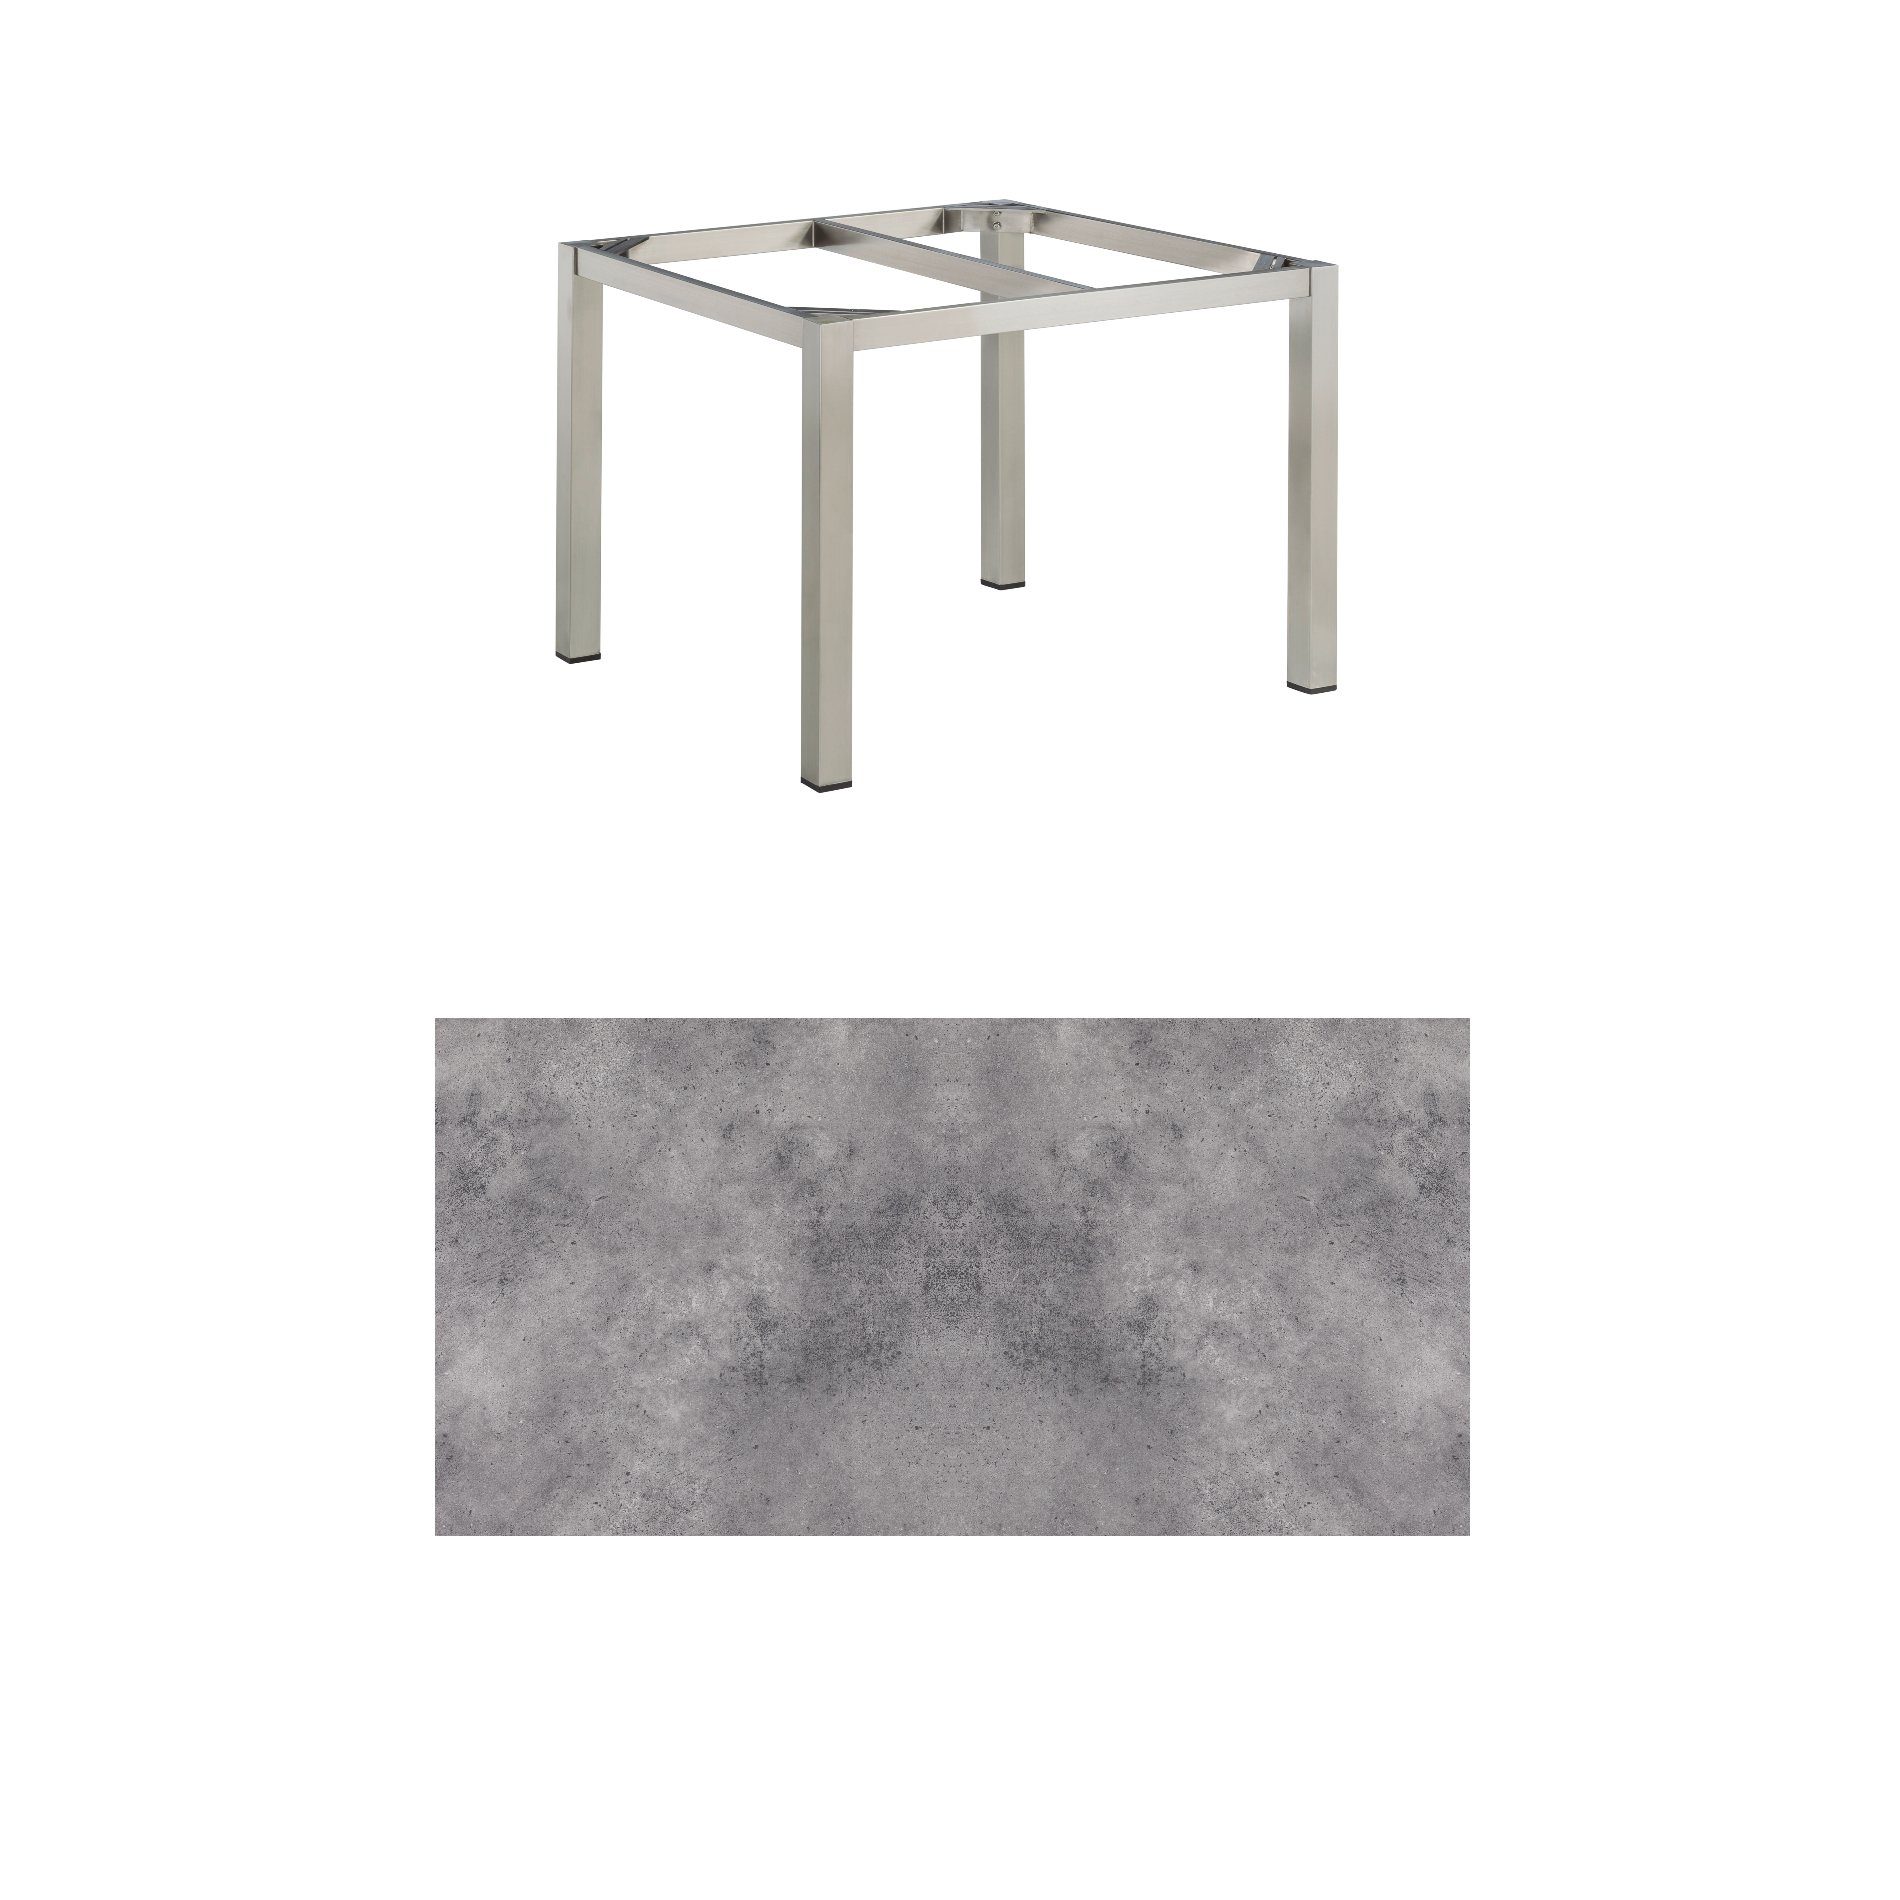 Kettler Gartentisch, Tischgestell 95x95cm "Cubic", Edelstahl, mit Tischplatte HPL anthrazit